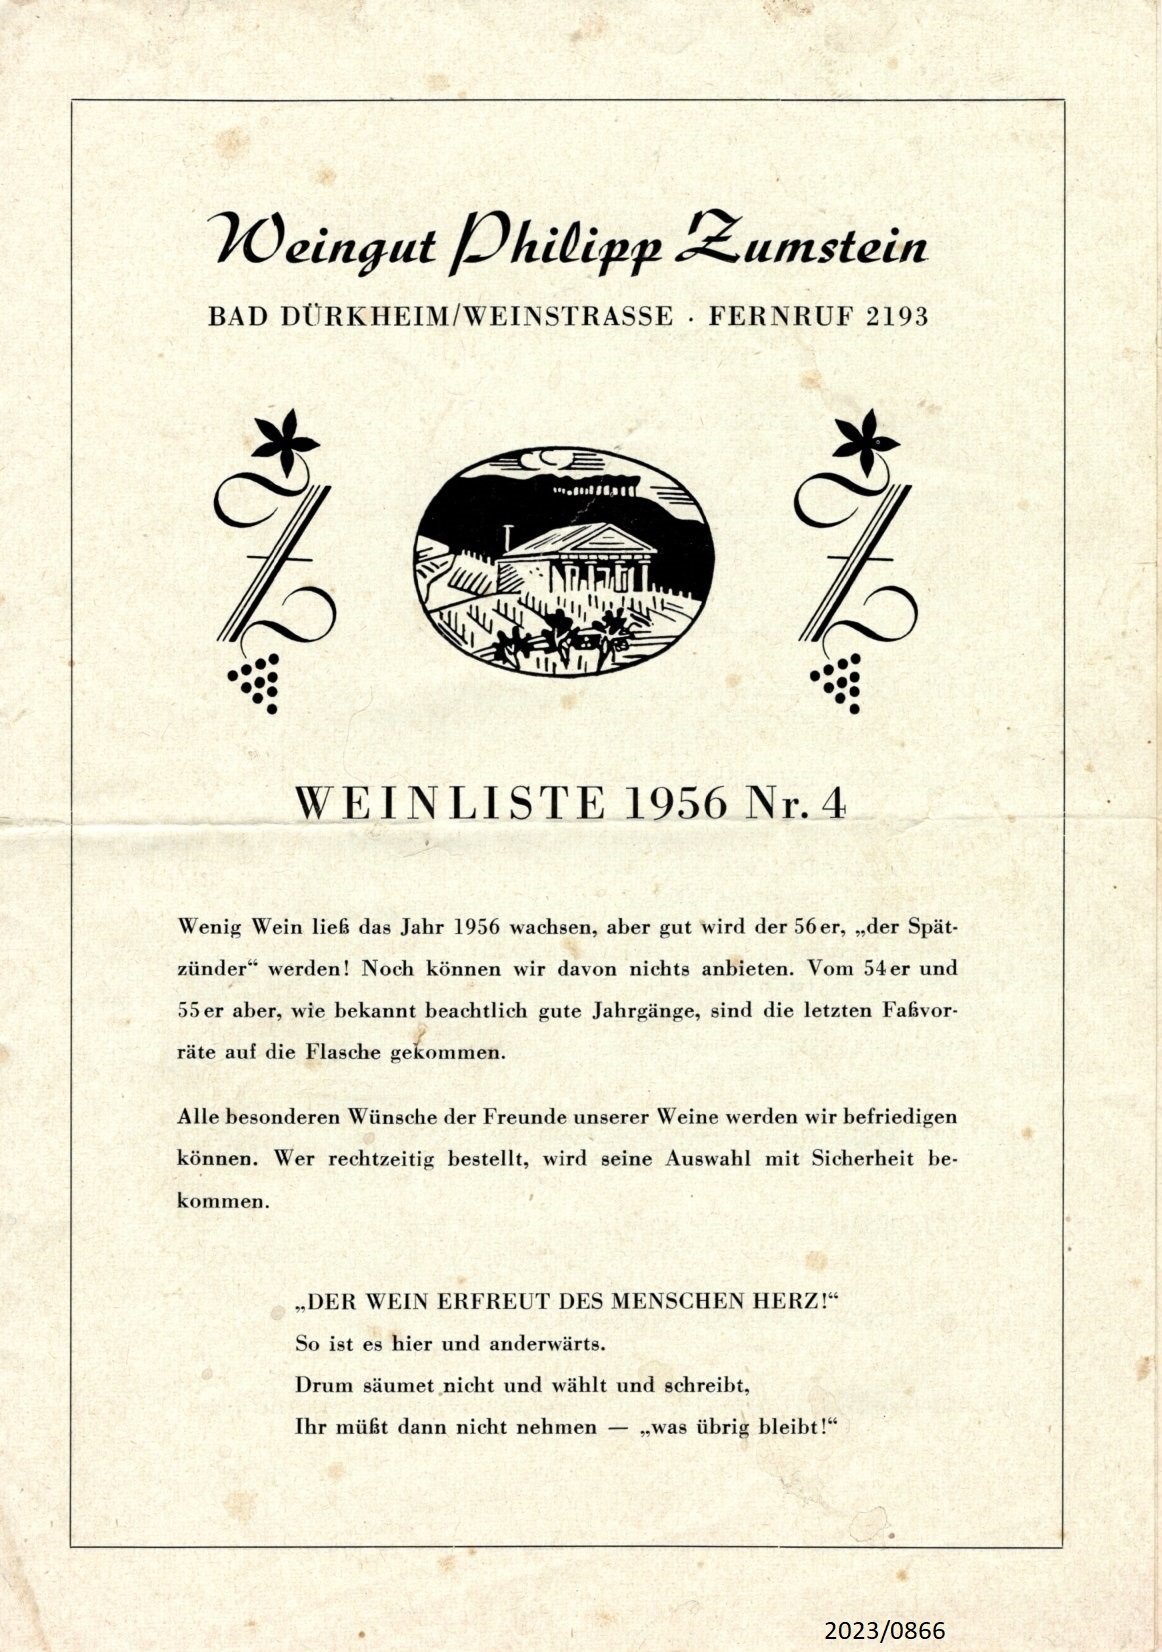 Weinliste 1956 Nr. 4 - Weingut Philipp Zumstein (Stadtmuseum Bad Dürkheim im Kulturzentrum Haus Catoir CC BY-NC-SA)